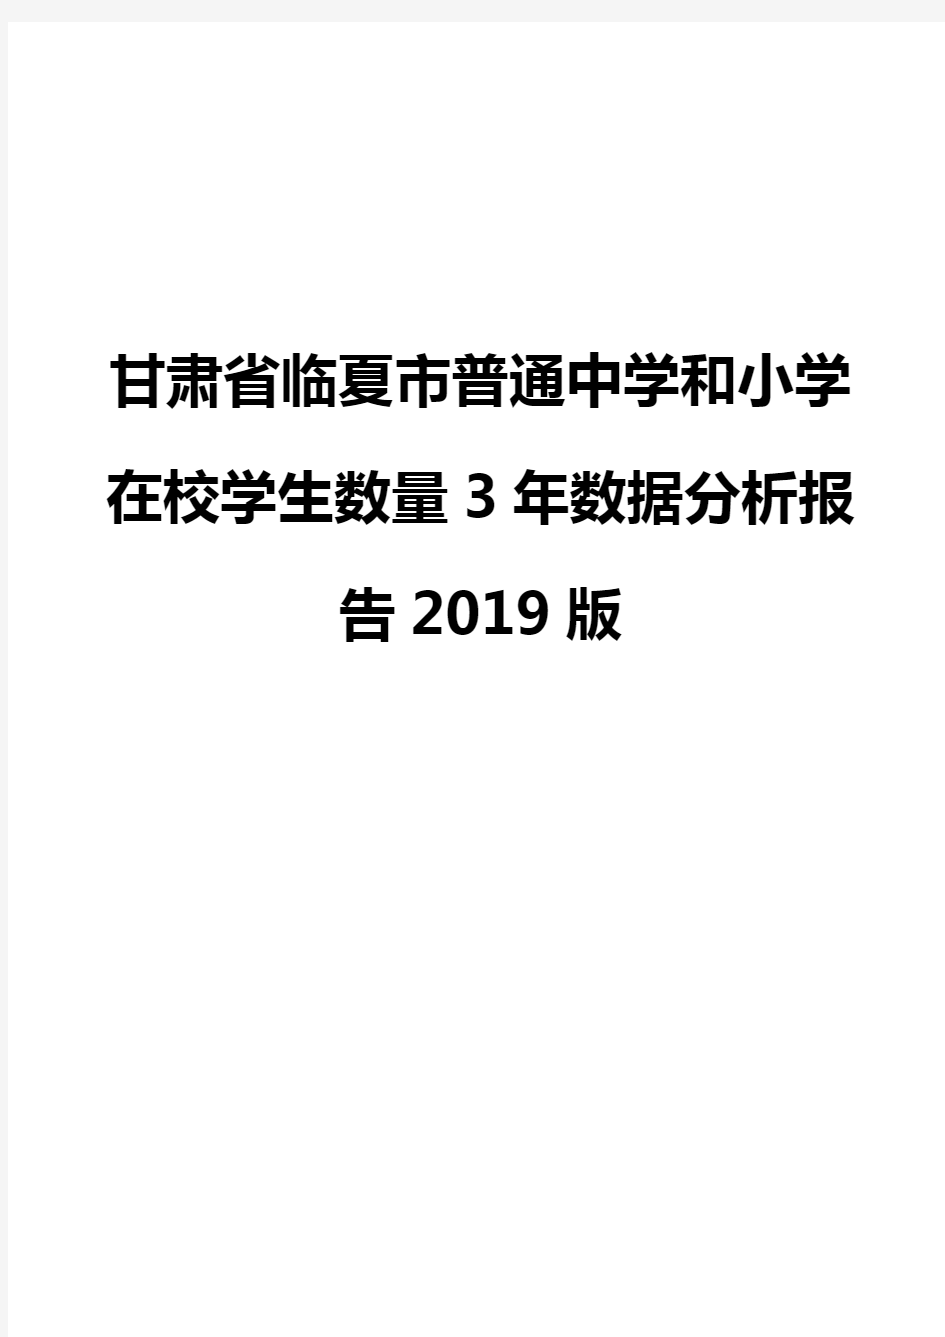 甘肃省临夏市普通中学和小学在校学生数量3年数据分析报告2019版